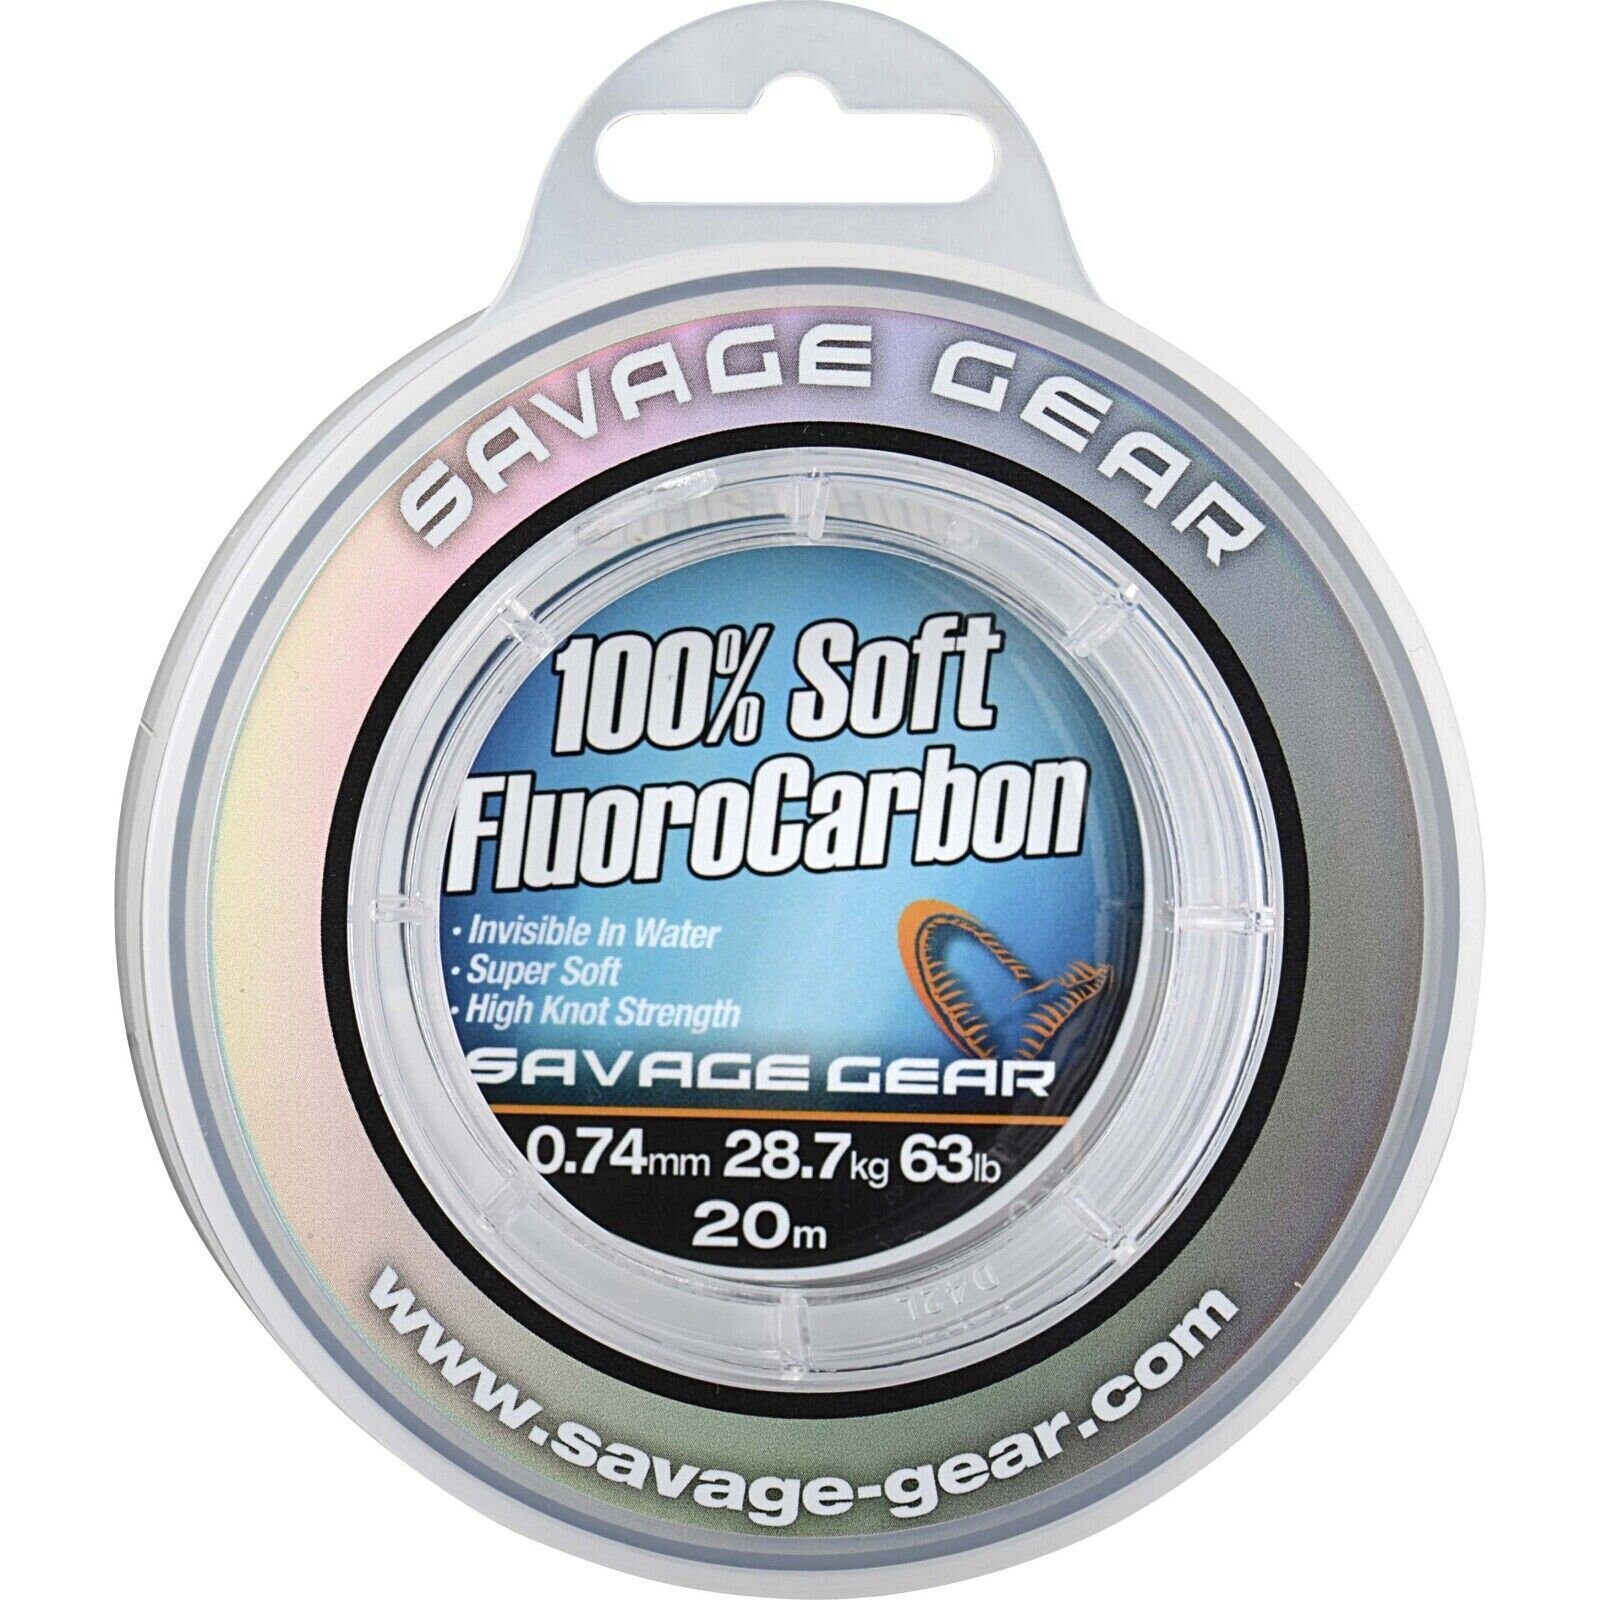 Savage Gear Angelschnur 100% Soft Fluorocarbon Fluo Vorfachschnur Angelvorfach, 50 m Länge, Unsichtbar im Wasser, Super weich, 100% Fluo